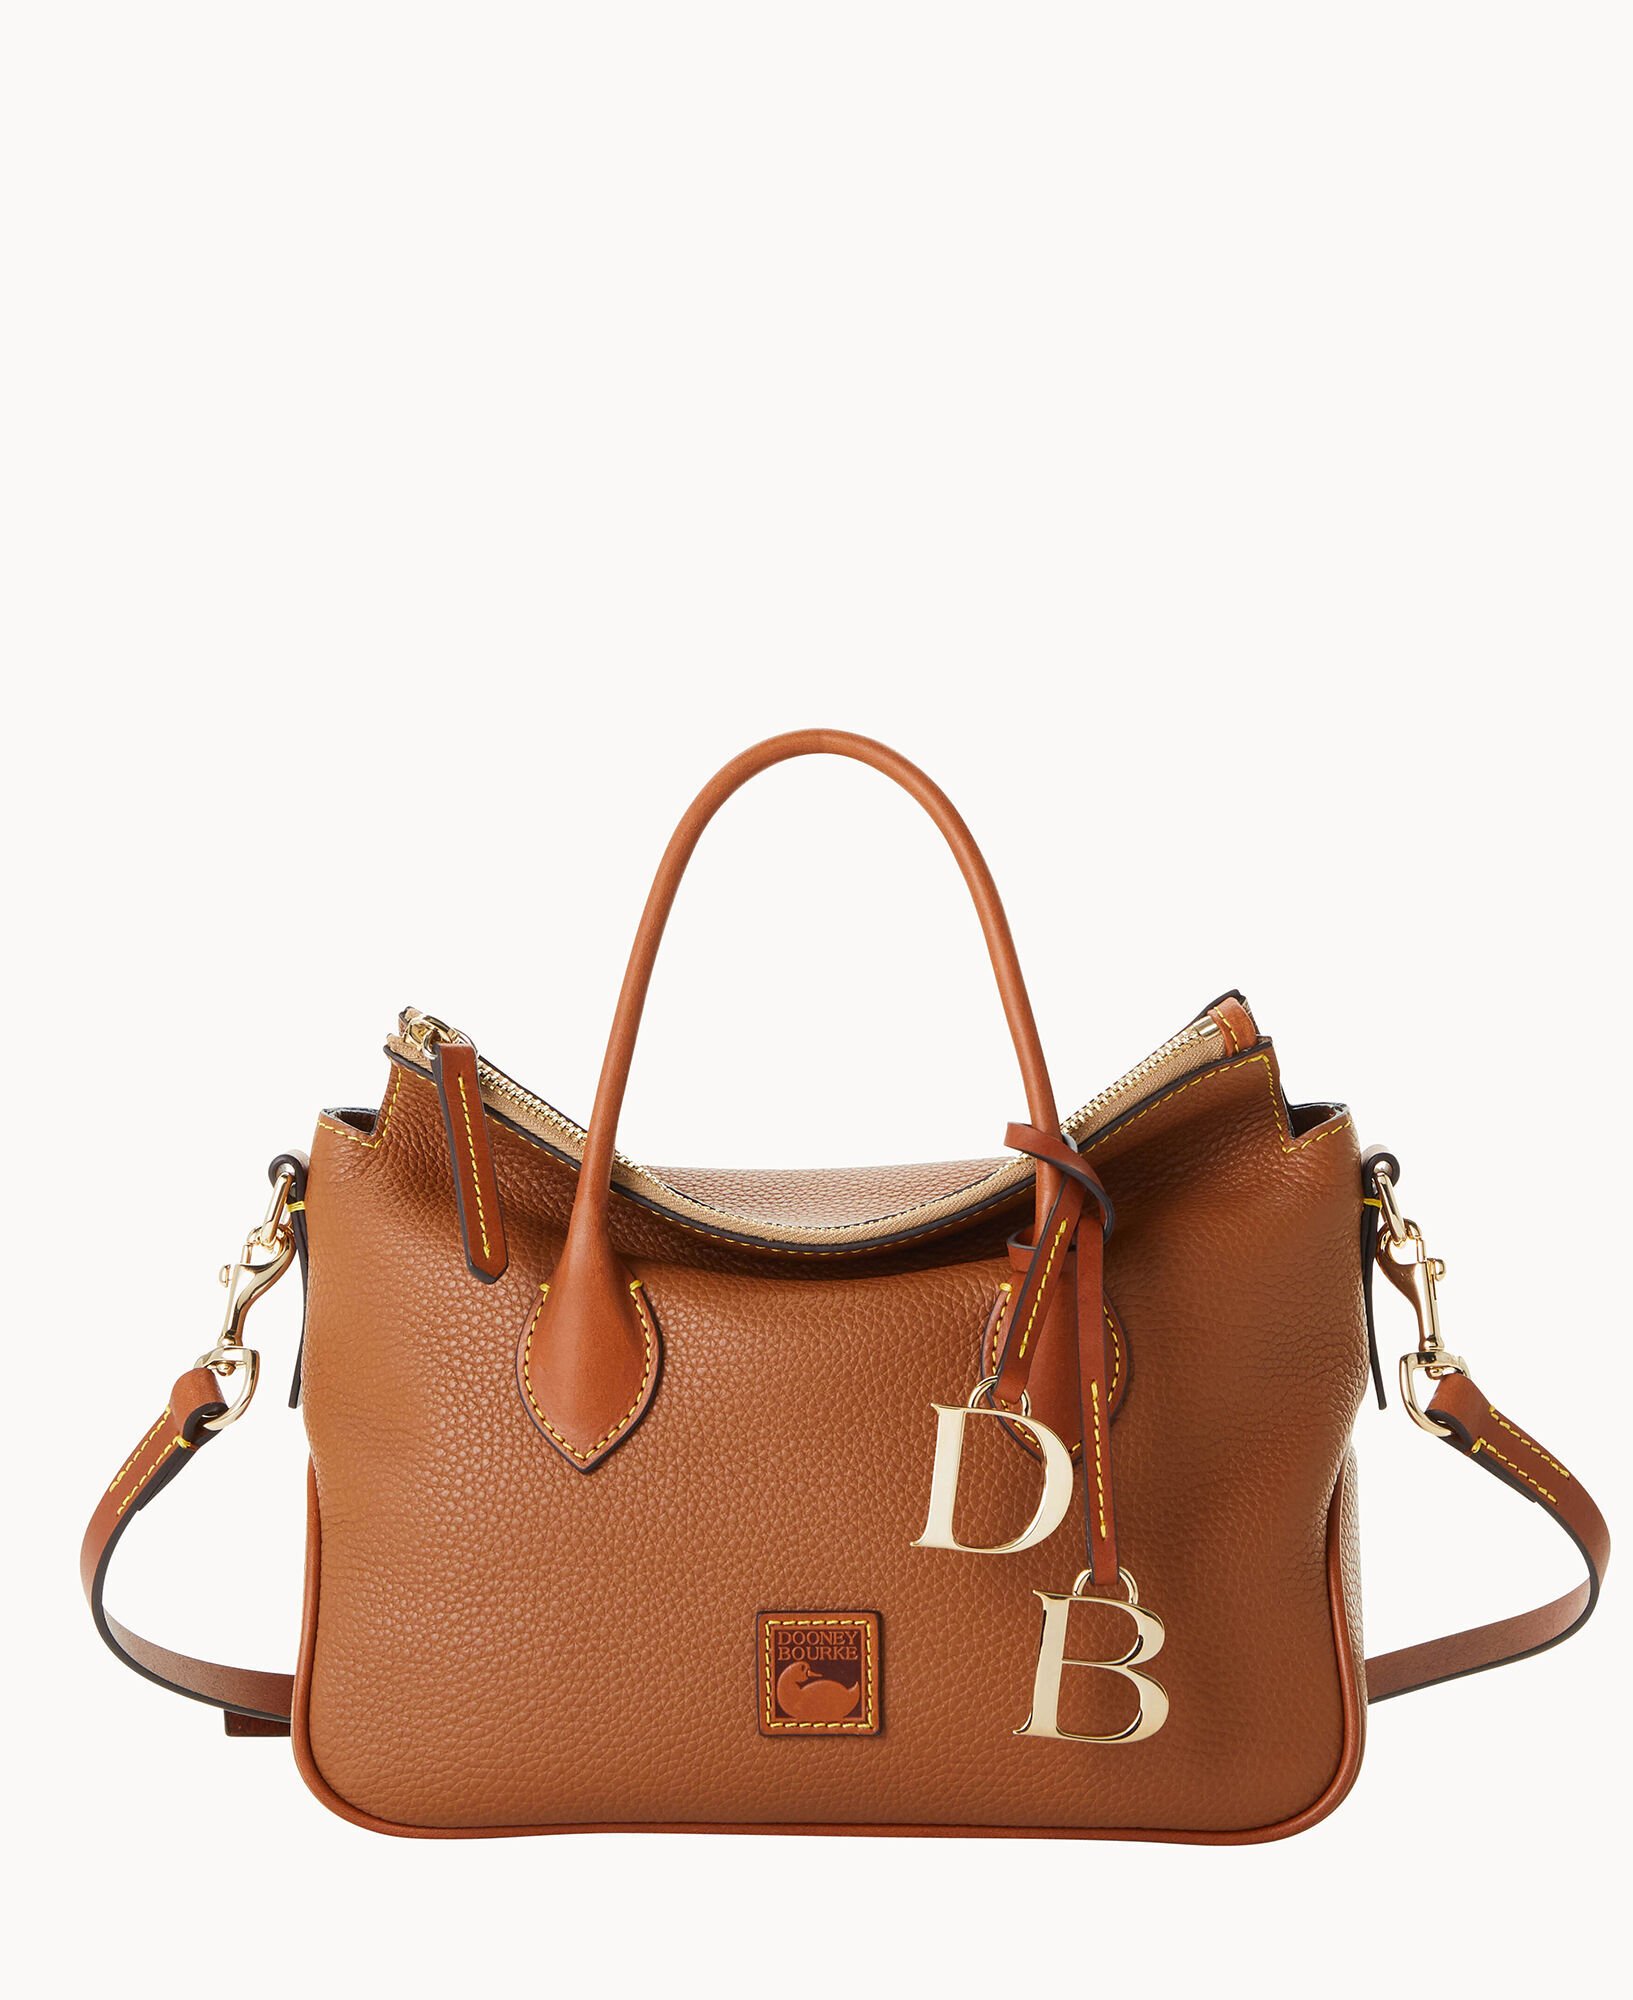 Dooney & Bourke Dark Brown Leather Satchel Bag